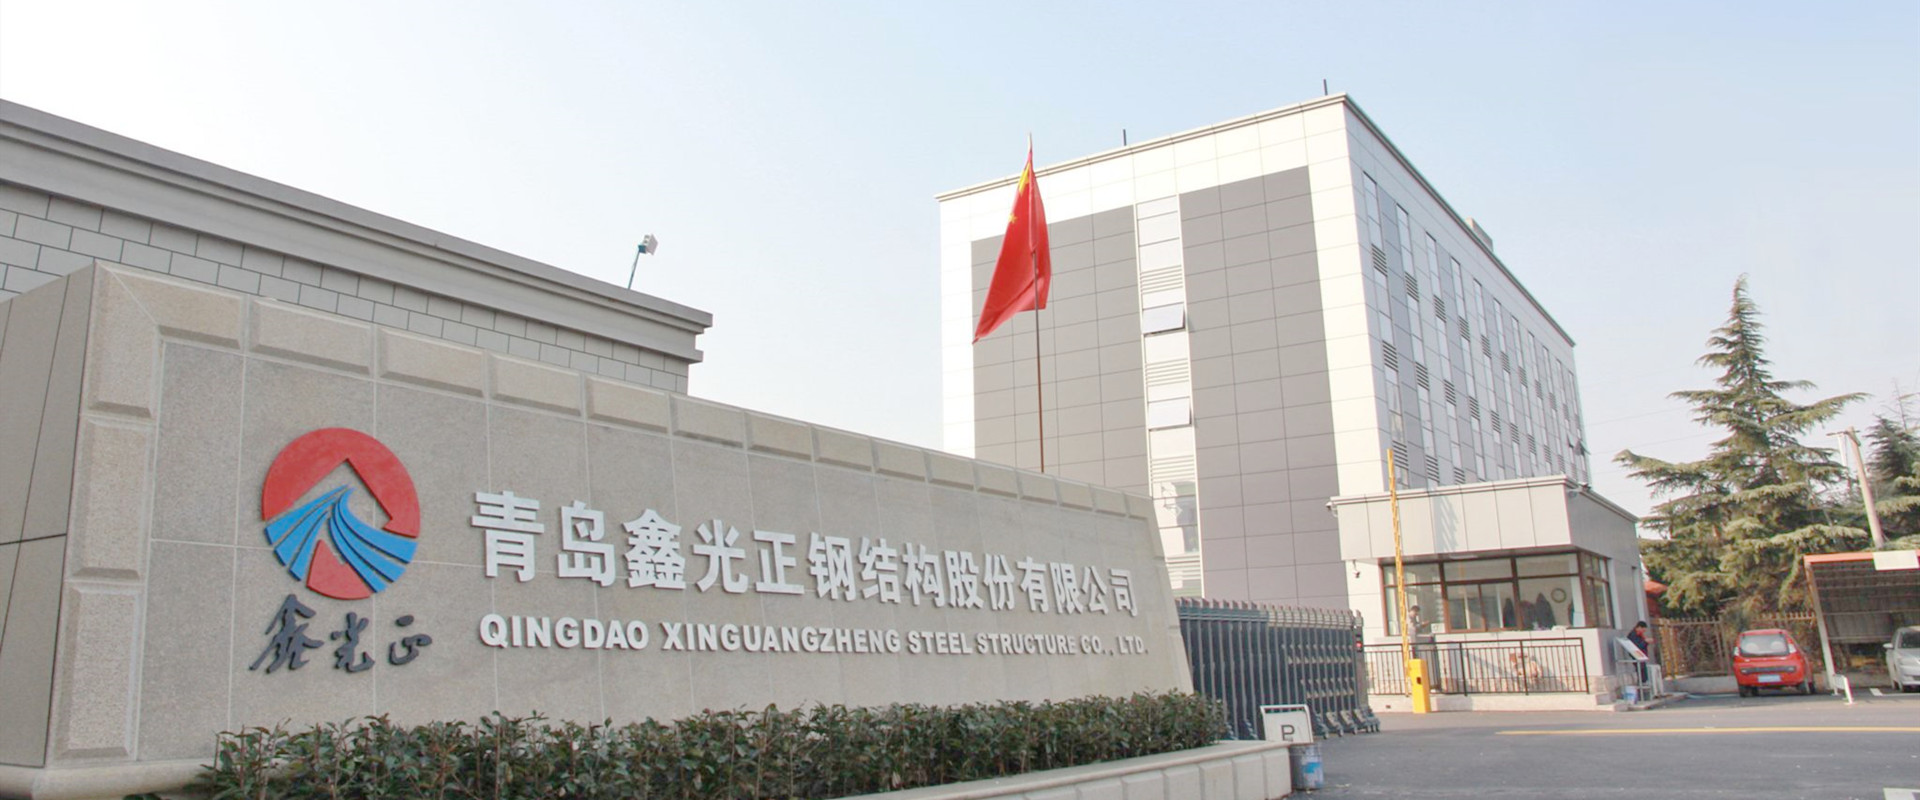 Headquarters of Xinguangzheng Group